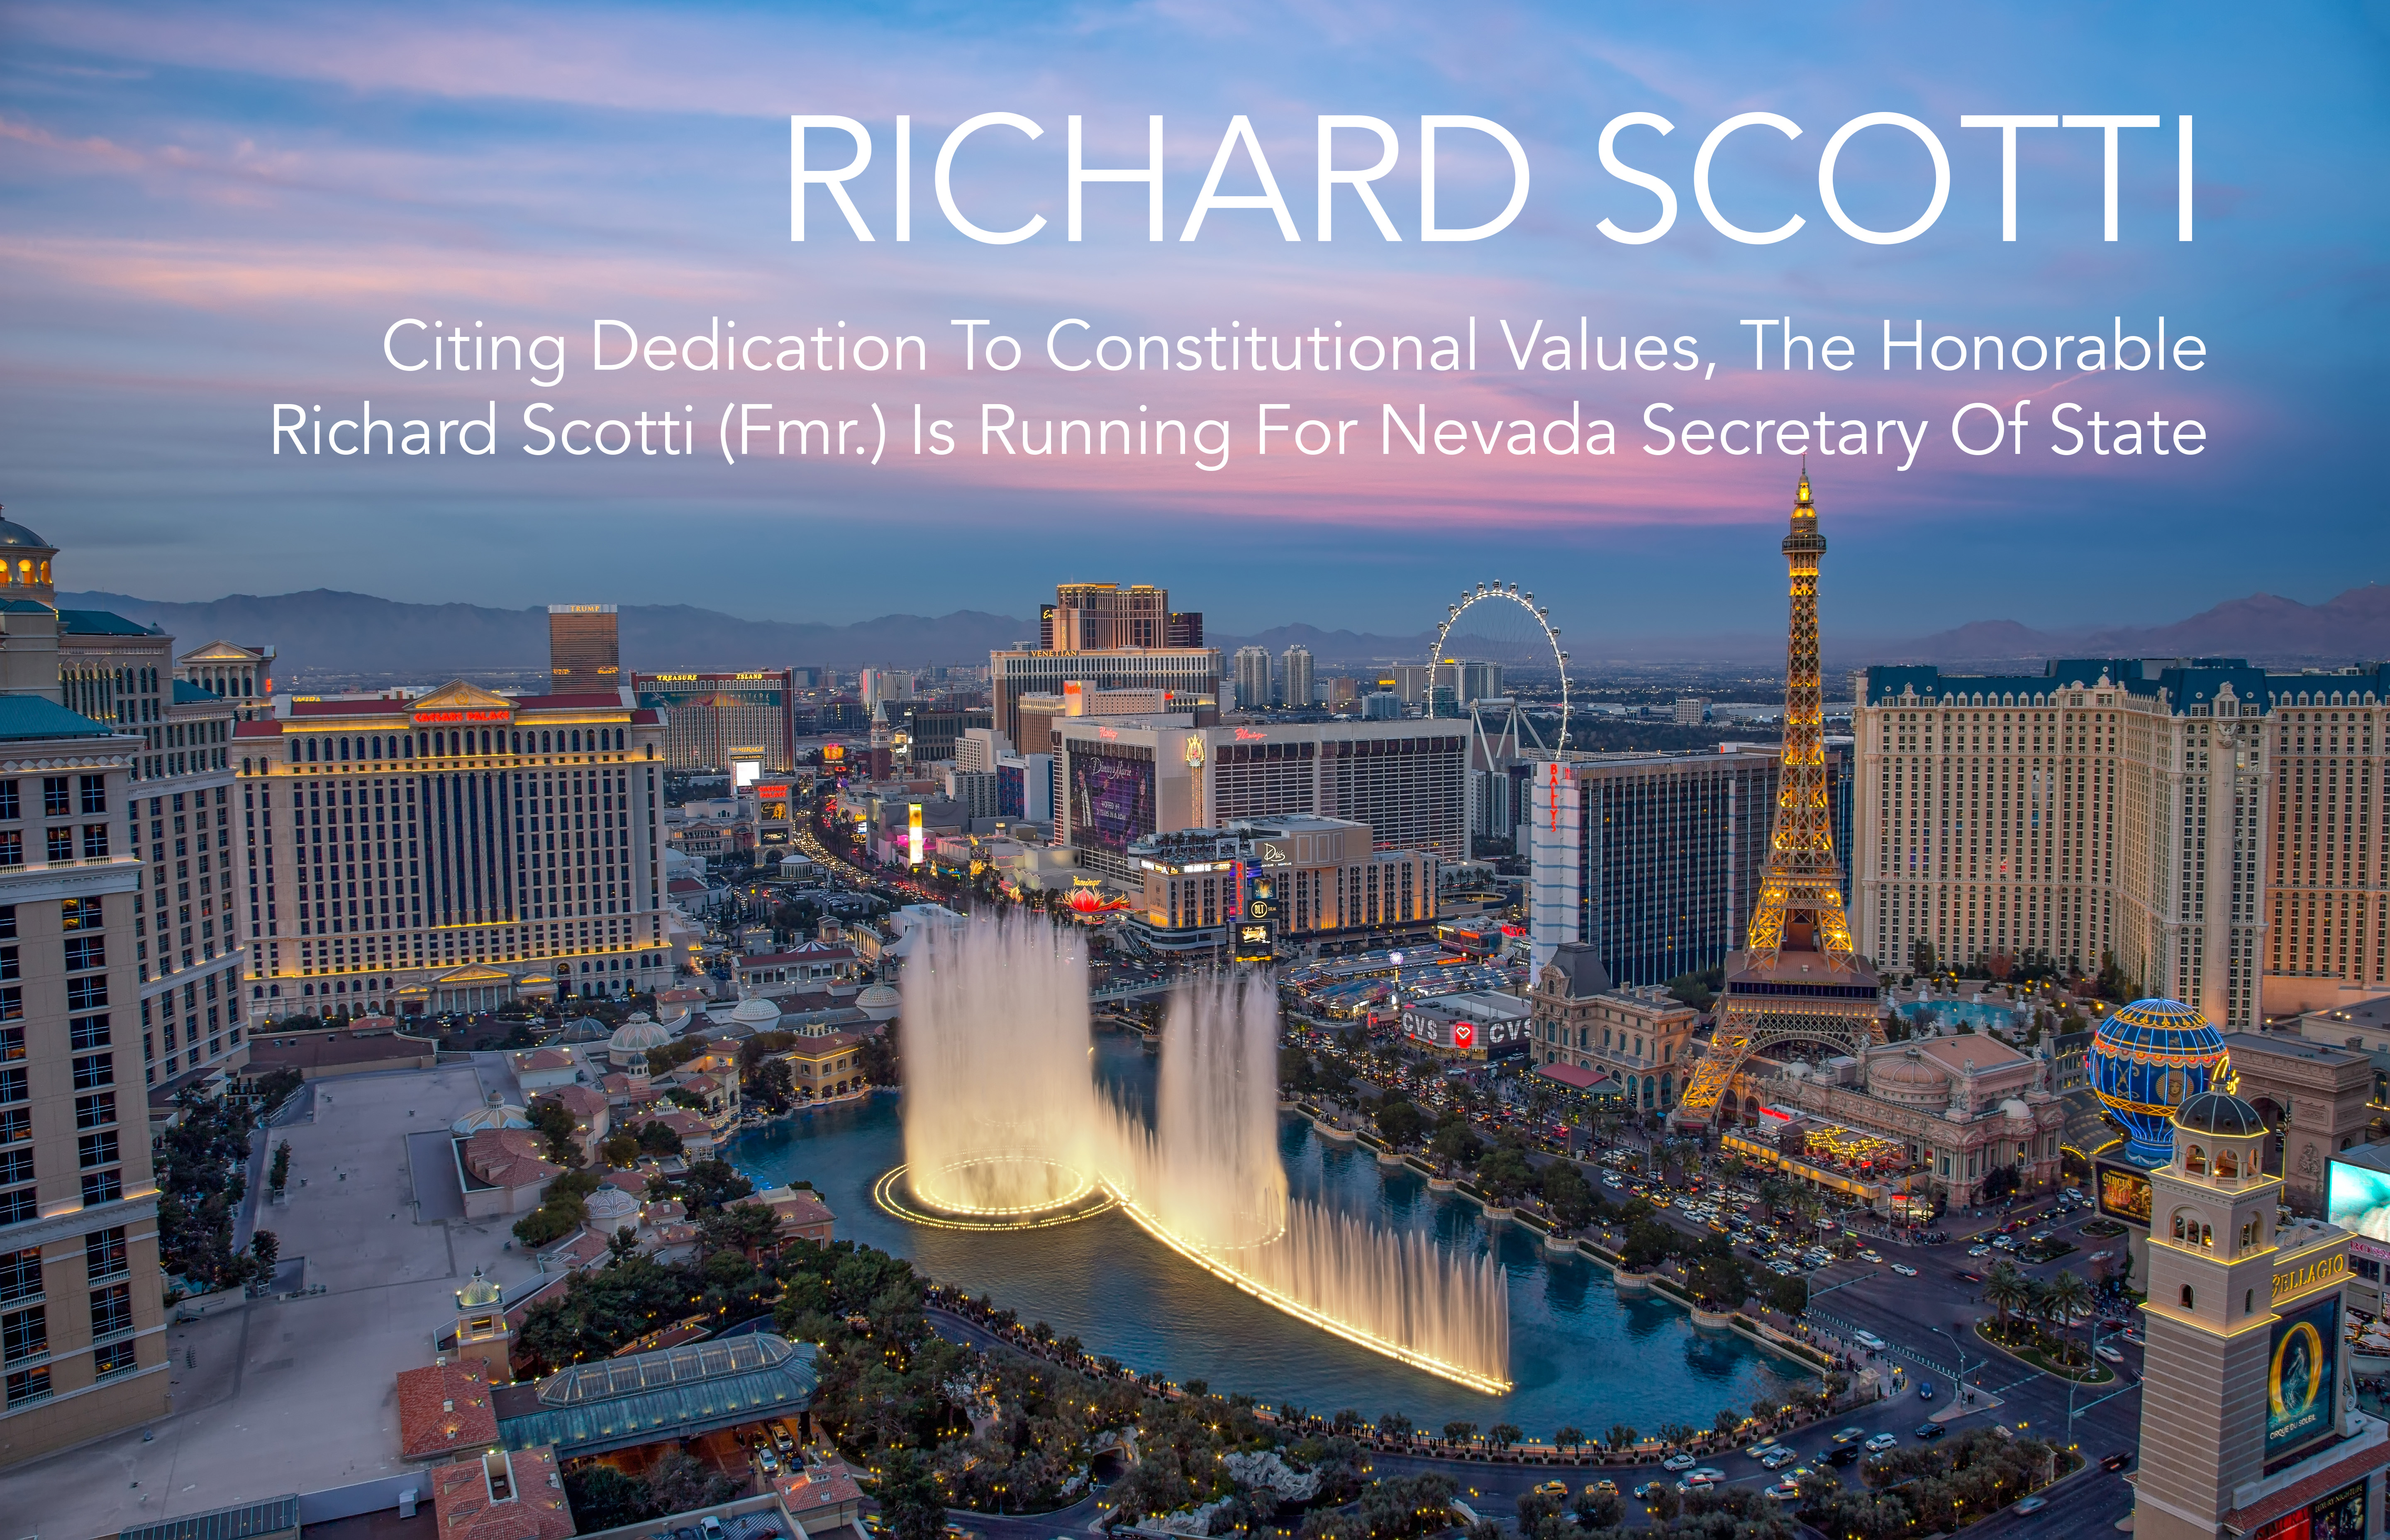 Richard Scotti running for Nevada Secretary of State